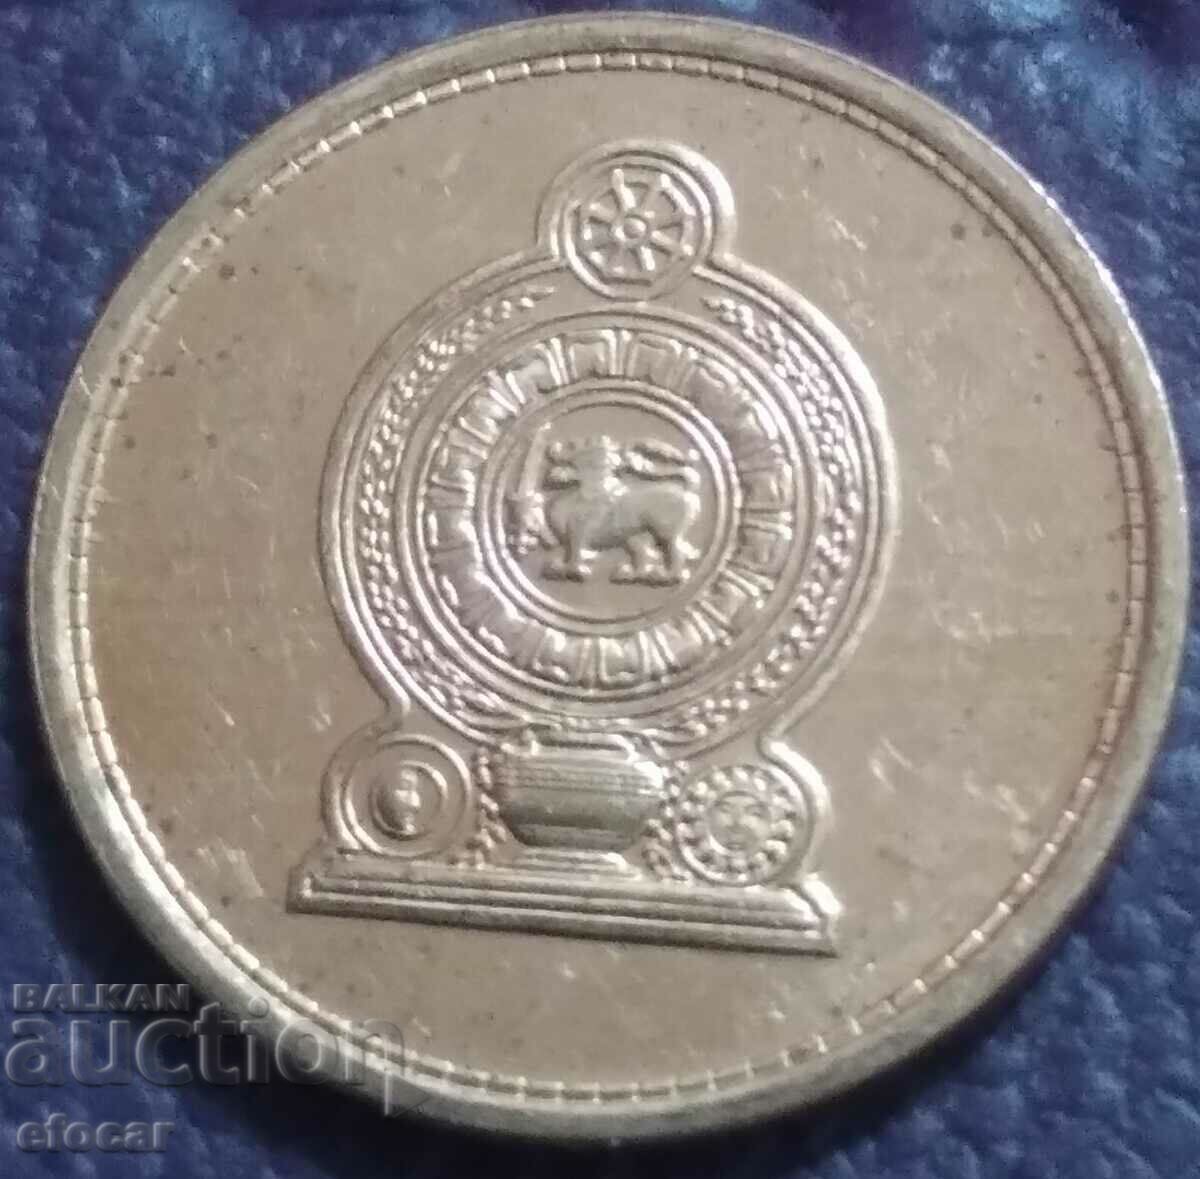 25 cents Σρι Λάνκα 2009